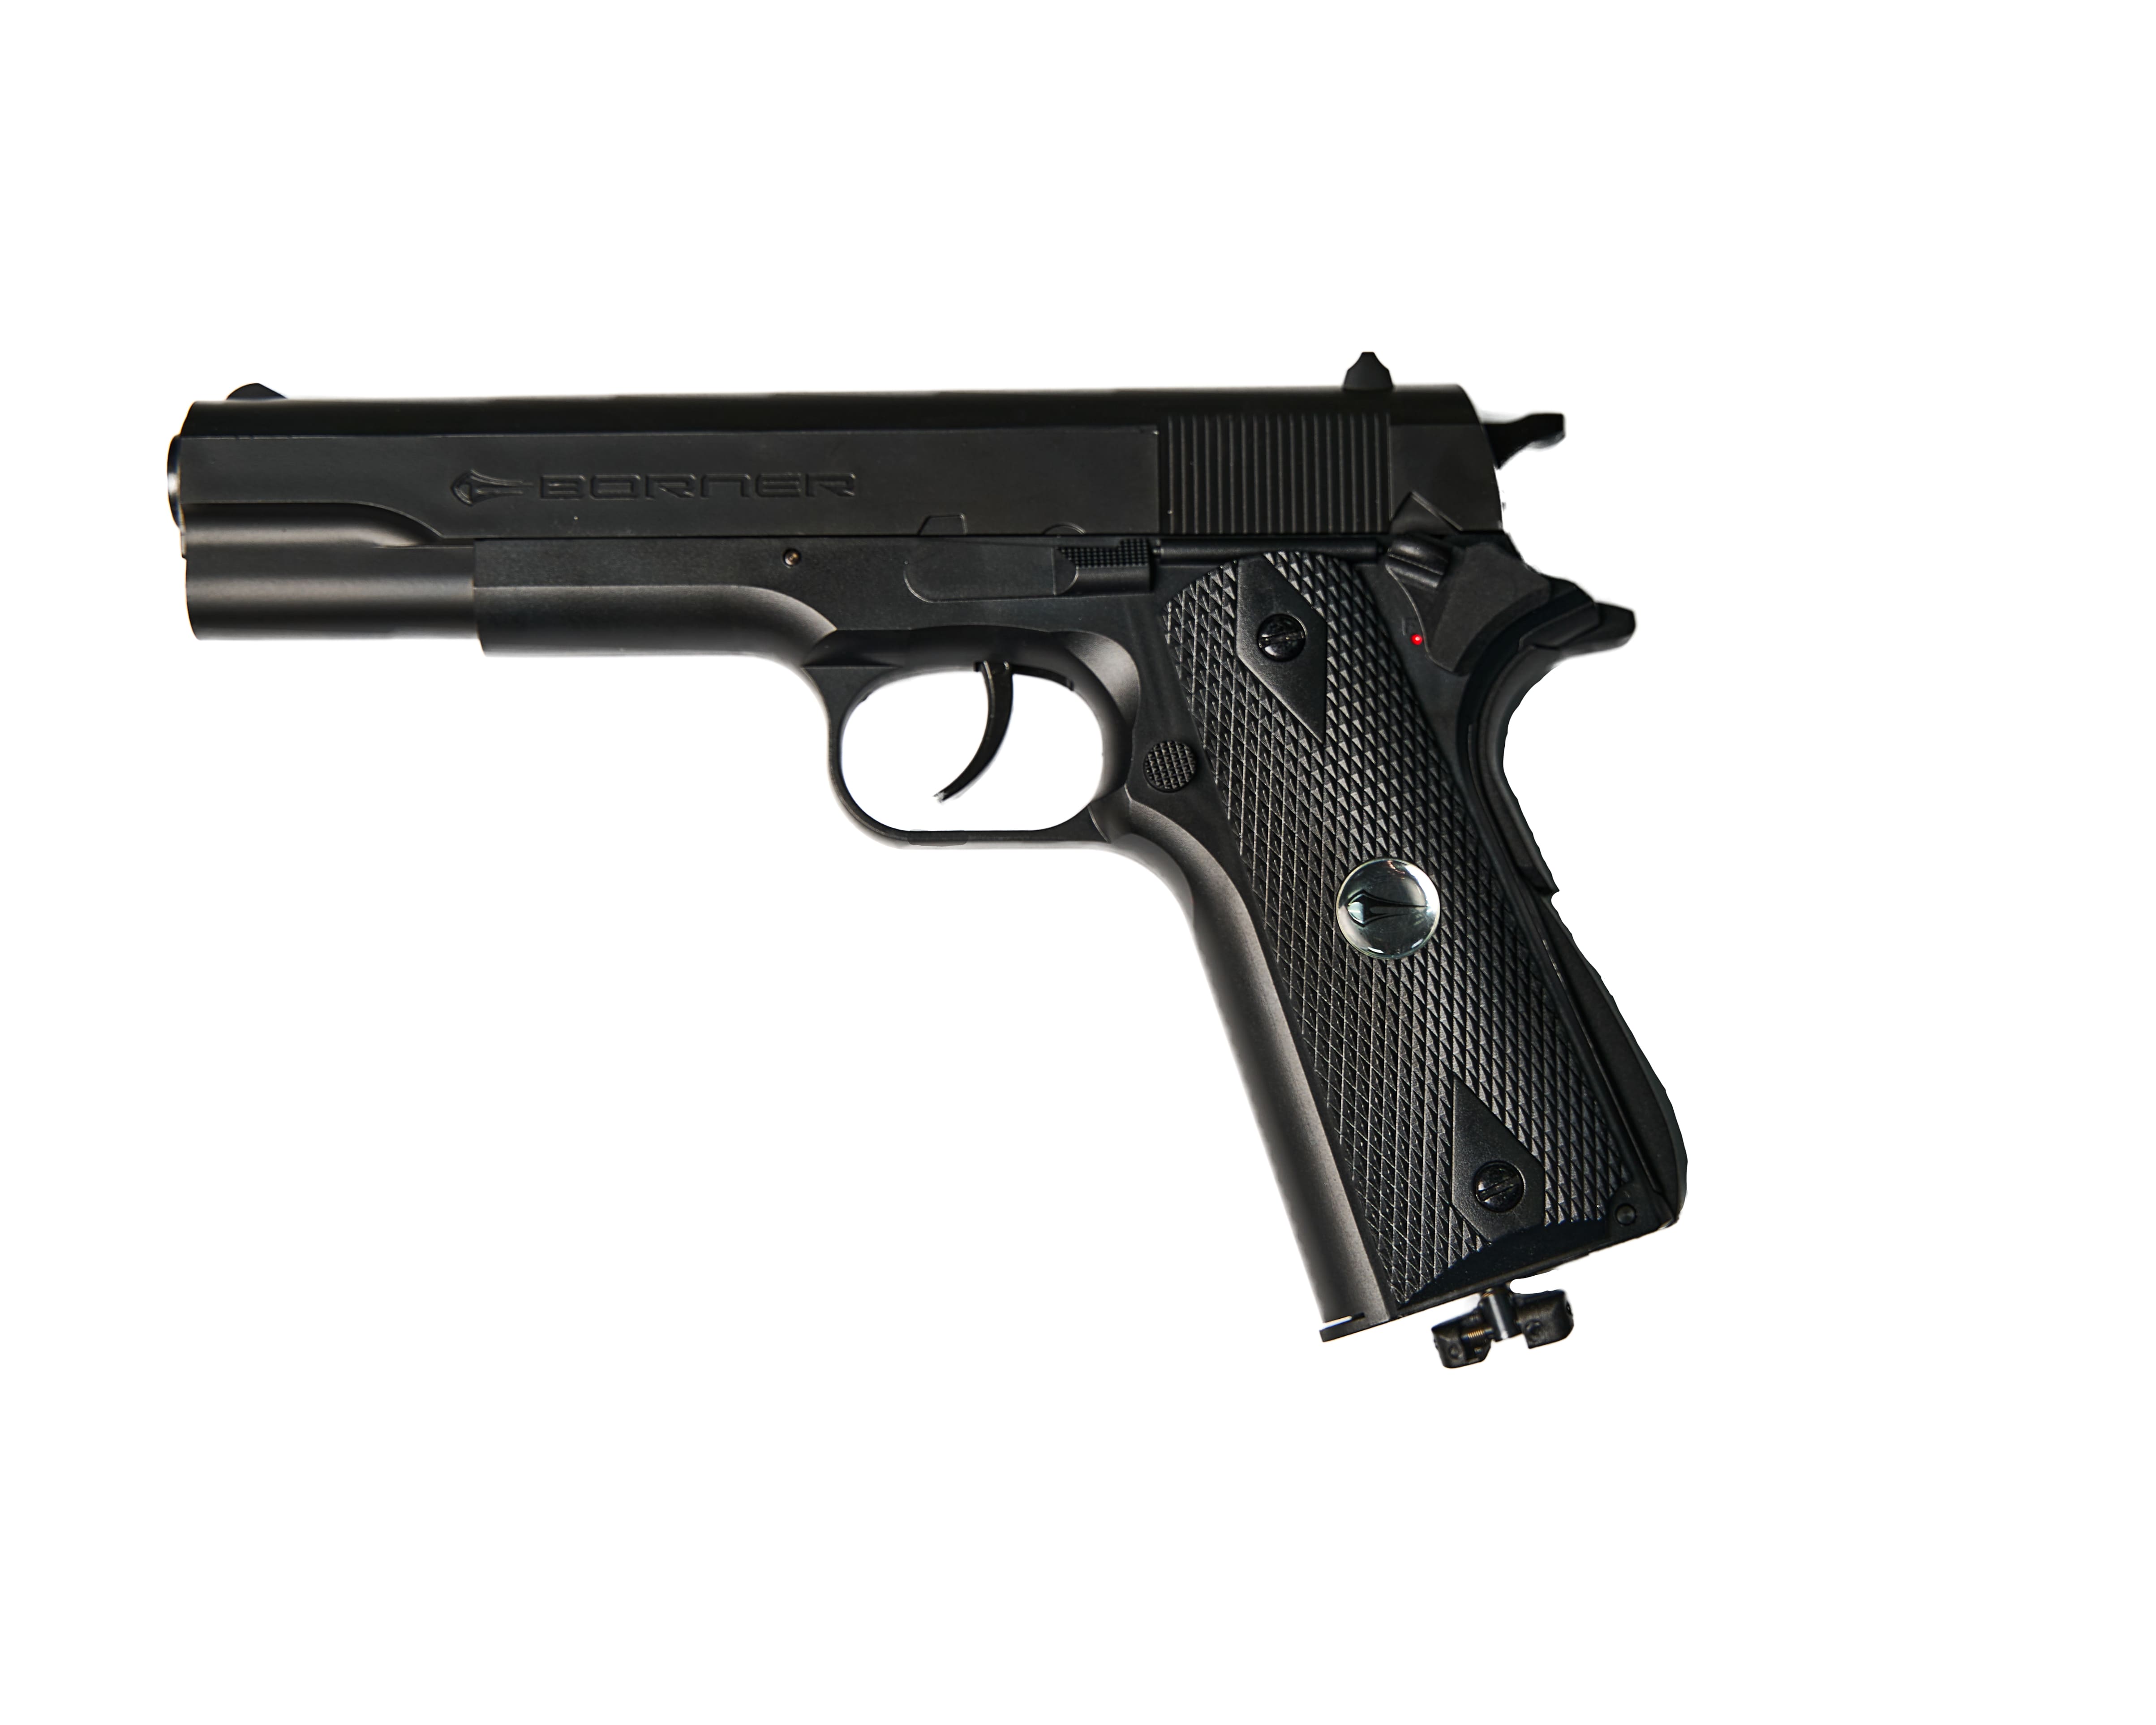 Пистолет Borner CLT125 Colt 4.5мм